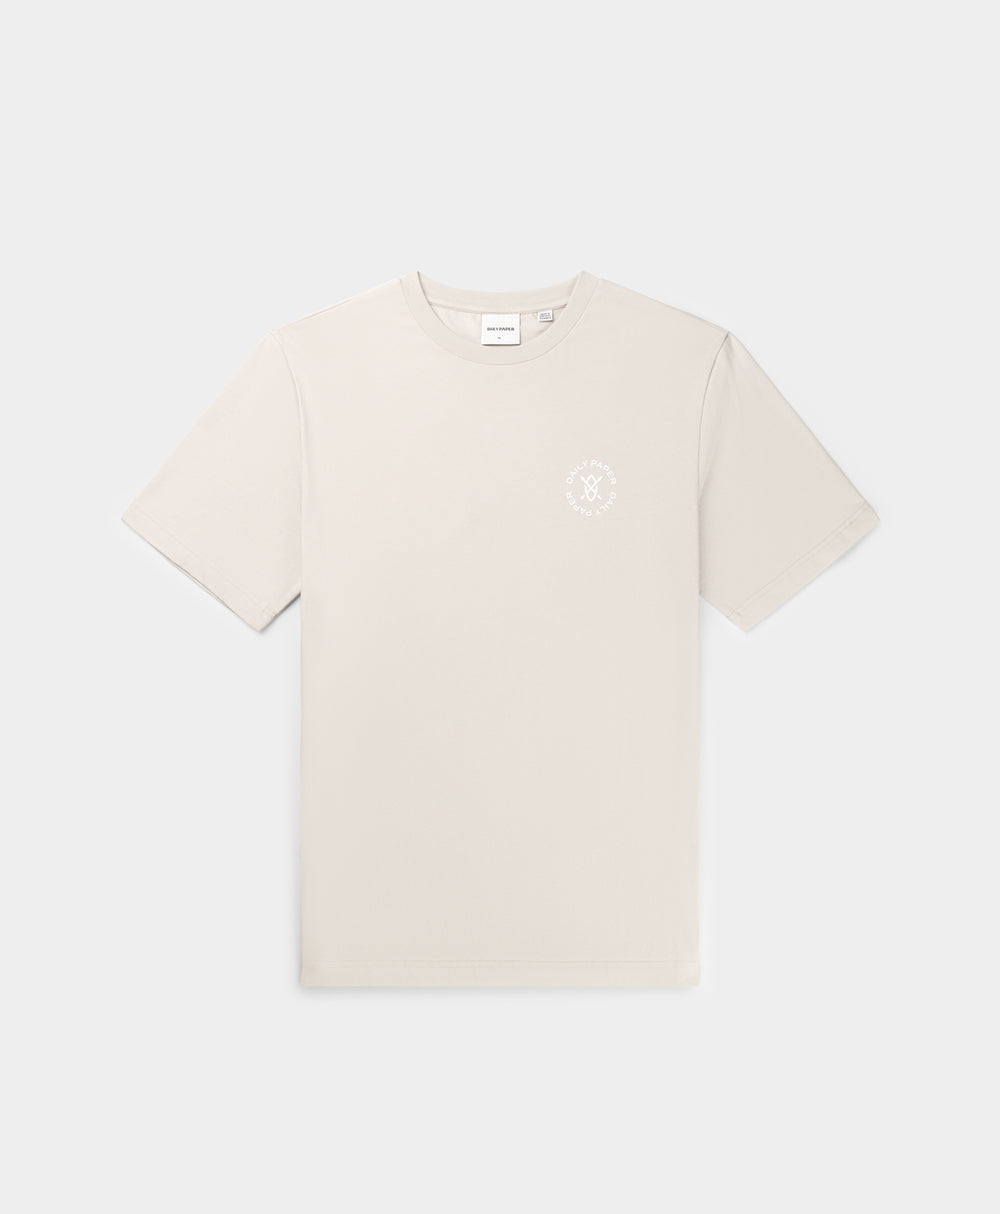 DP - Moonstruck Beige Circle T-Shirt - Packshot - Front